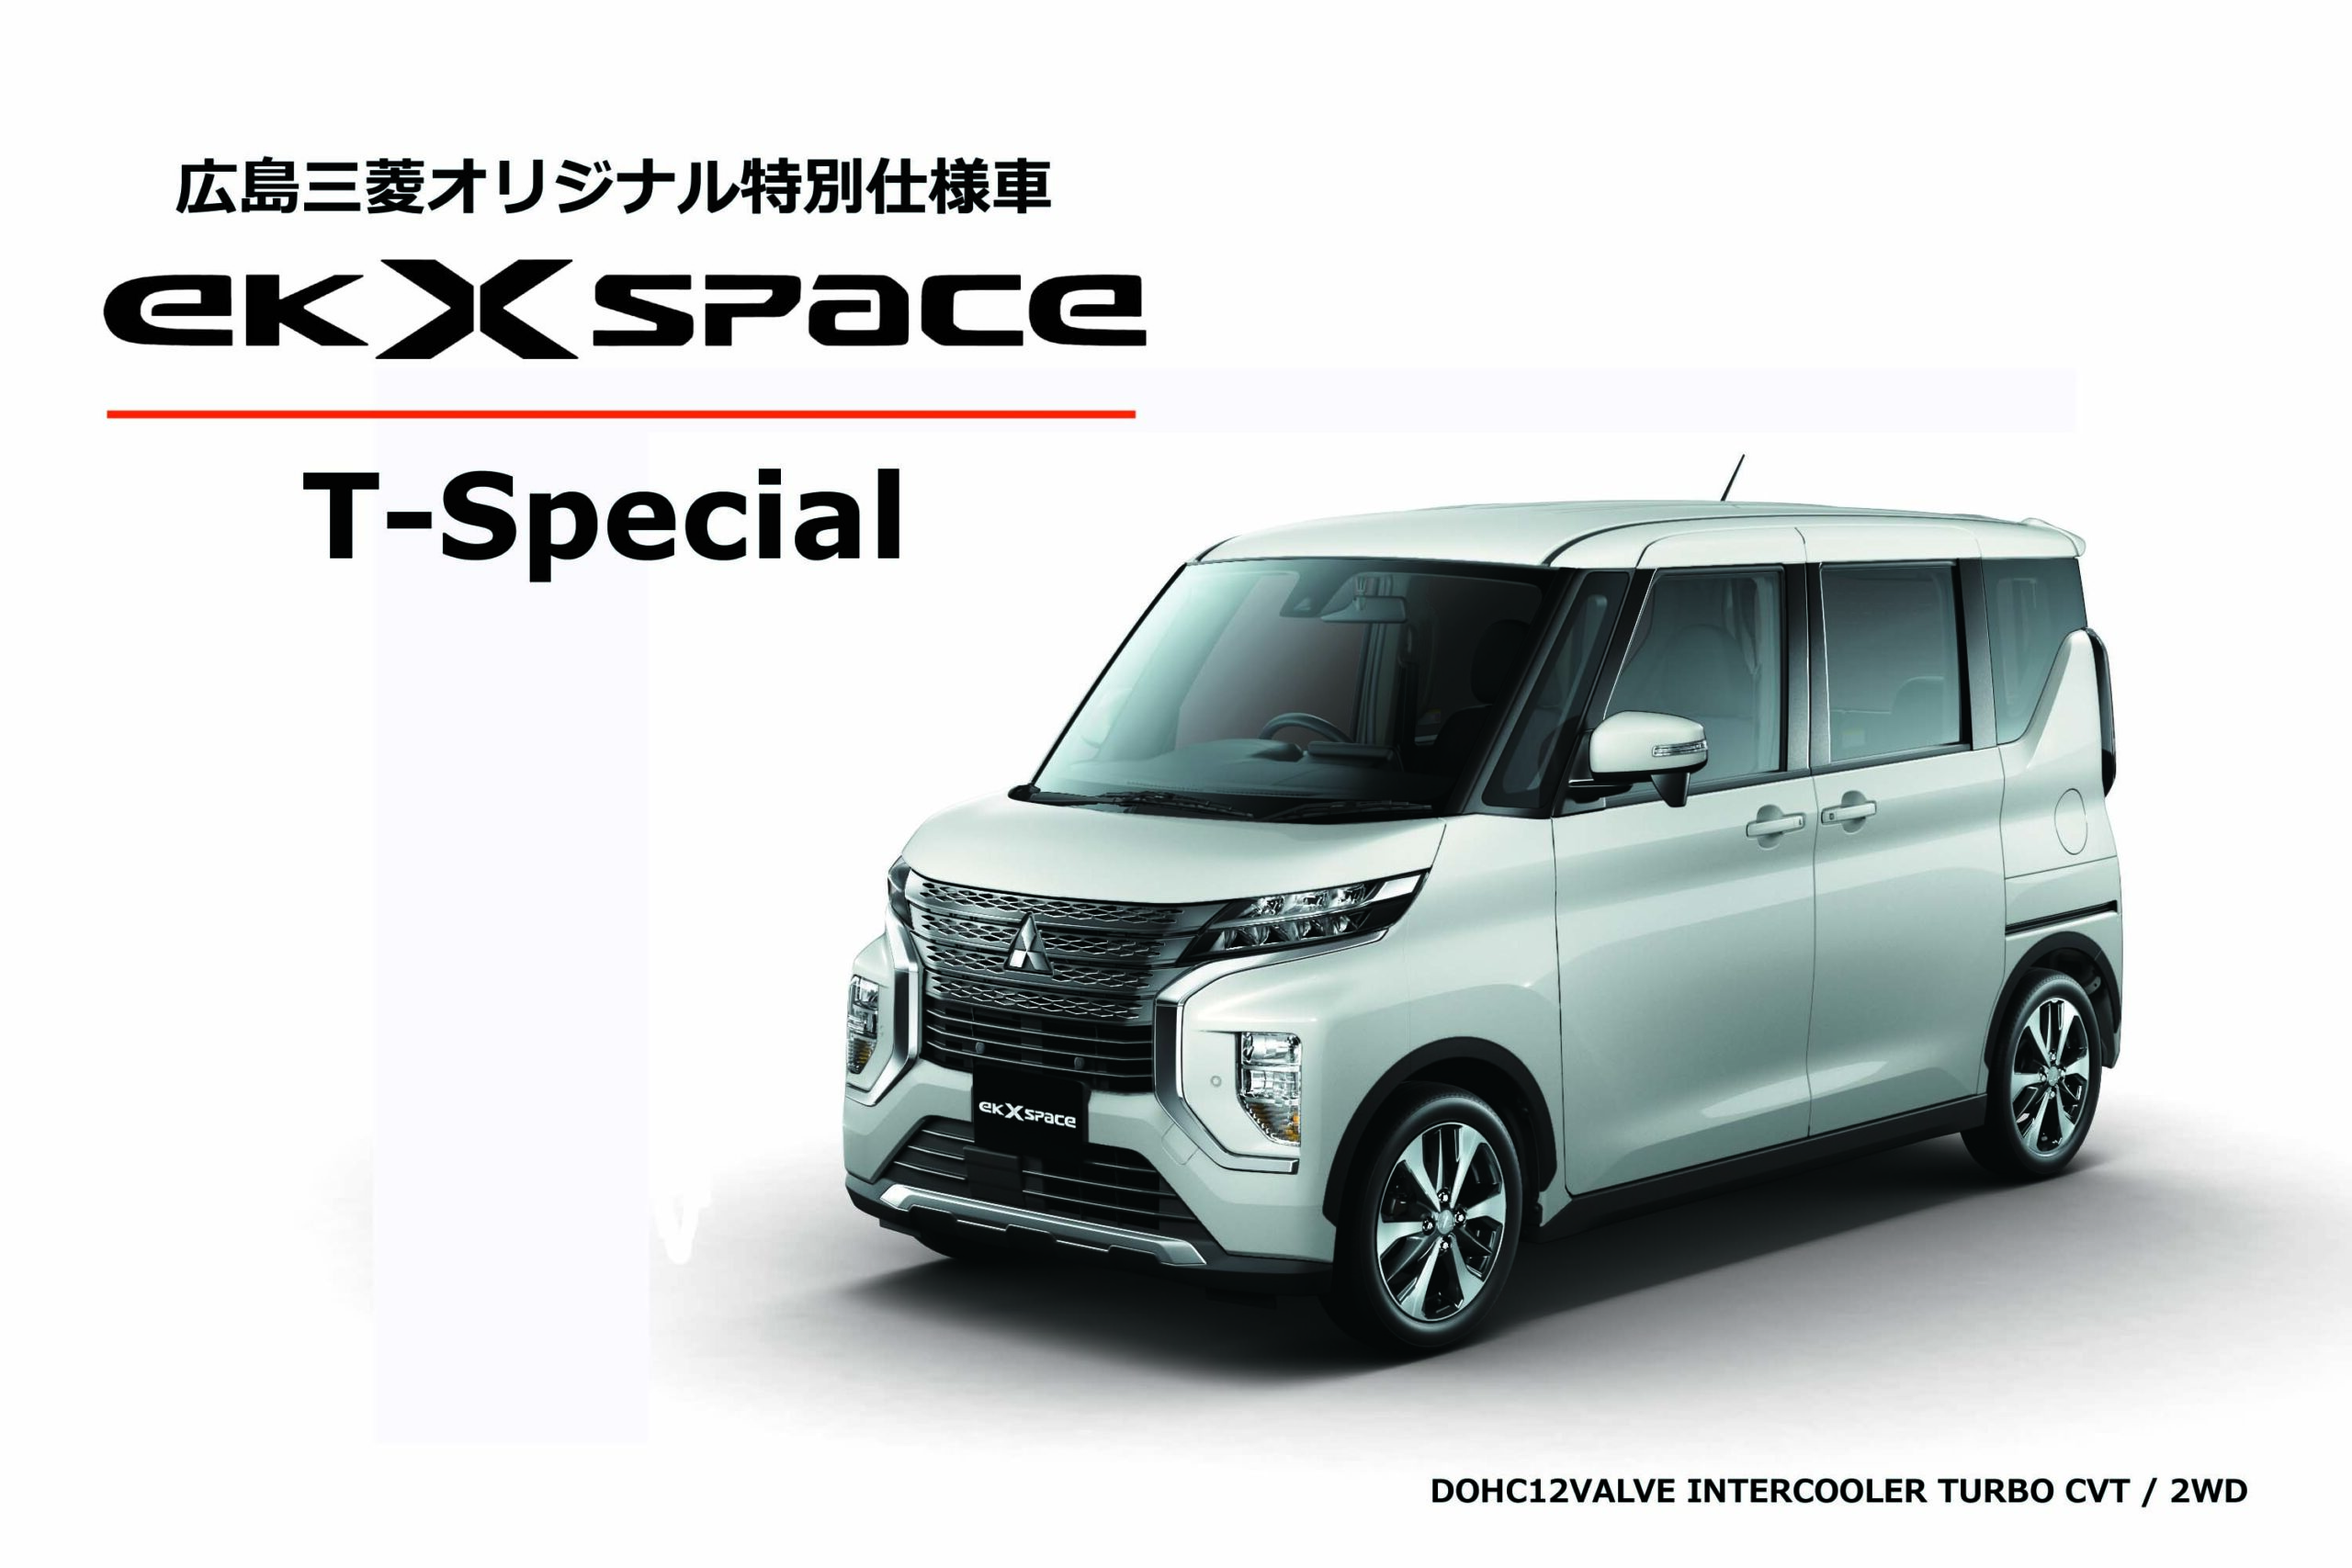 力強いｓｕｖスタイルが人気のｅｋクロス スペースにお得な特別仕様車誕生 広島三菱自動車販売株式会社